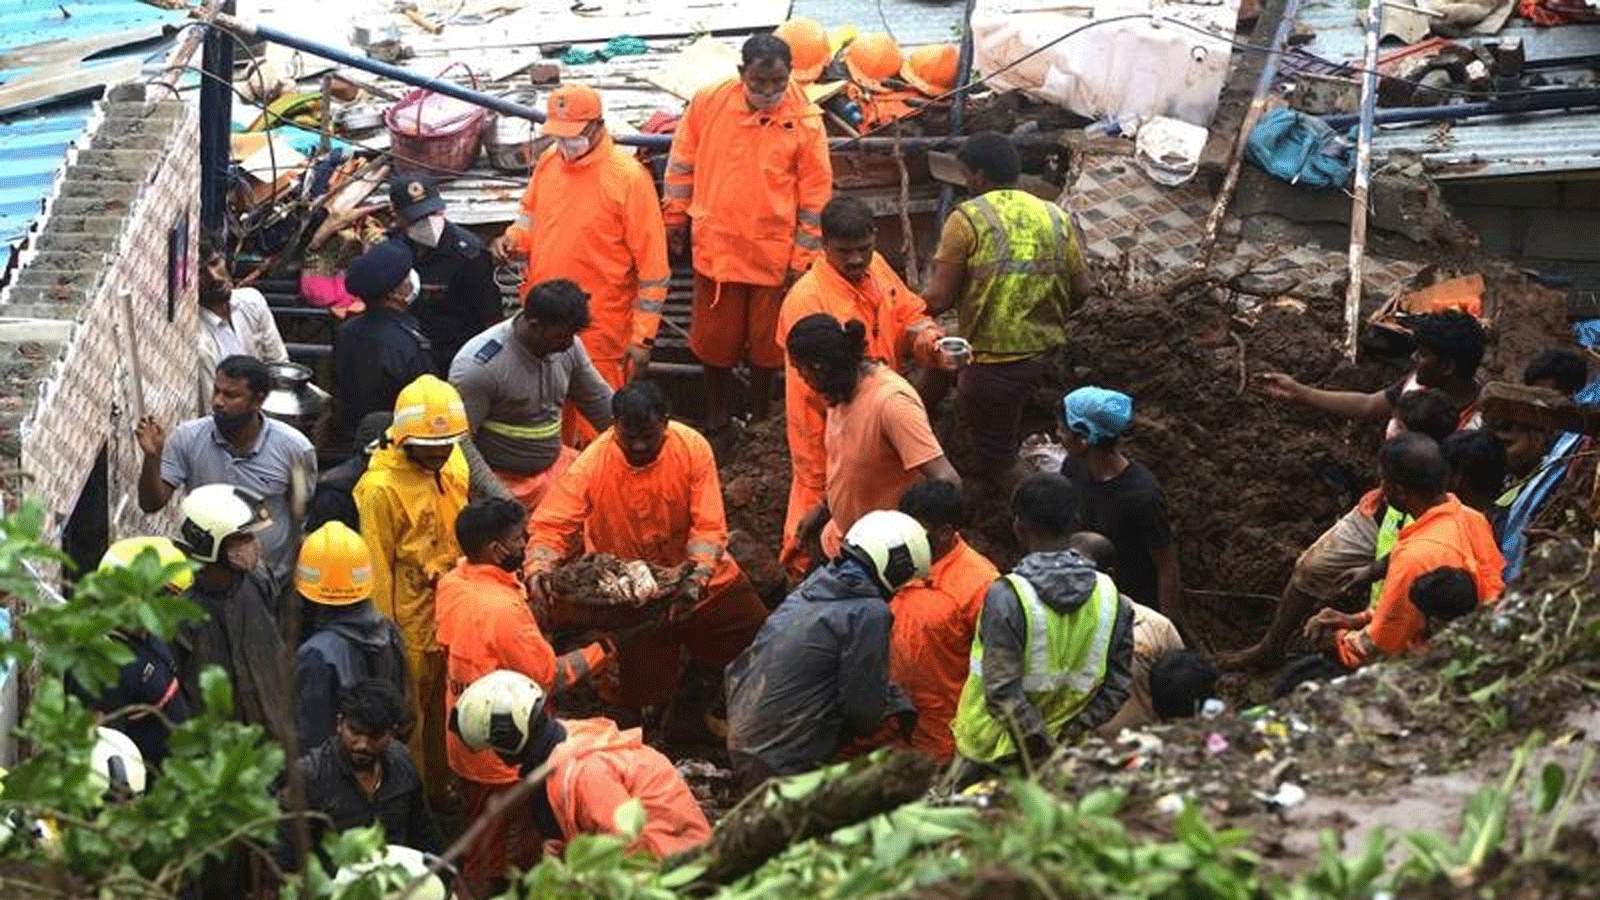 القوة الوطنية للاستجابة للكوارث (NDRF) وأفراد فريق الإنقاذ الآخرين يتفقدون موقع انهيار أرضي في منطقة فقيرة 